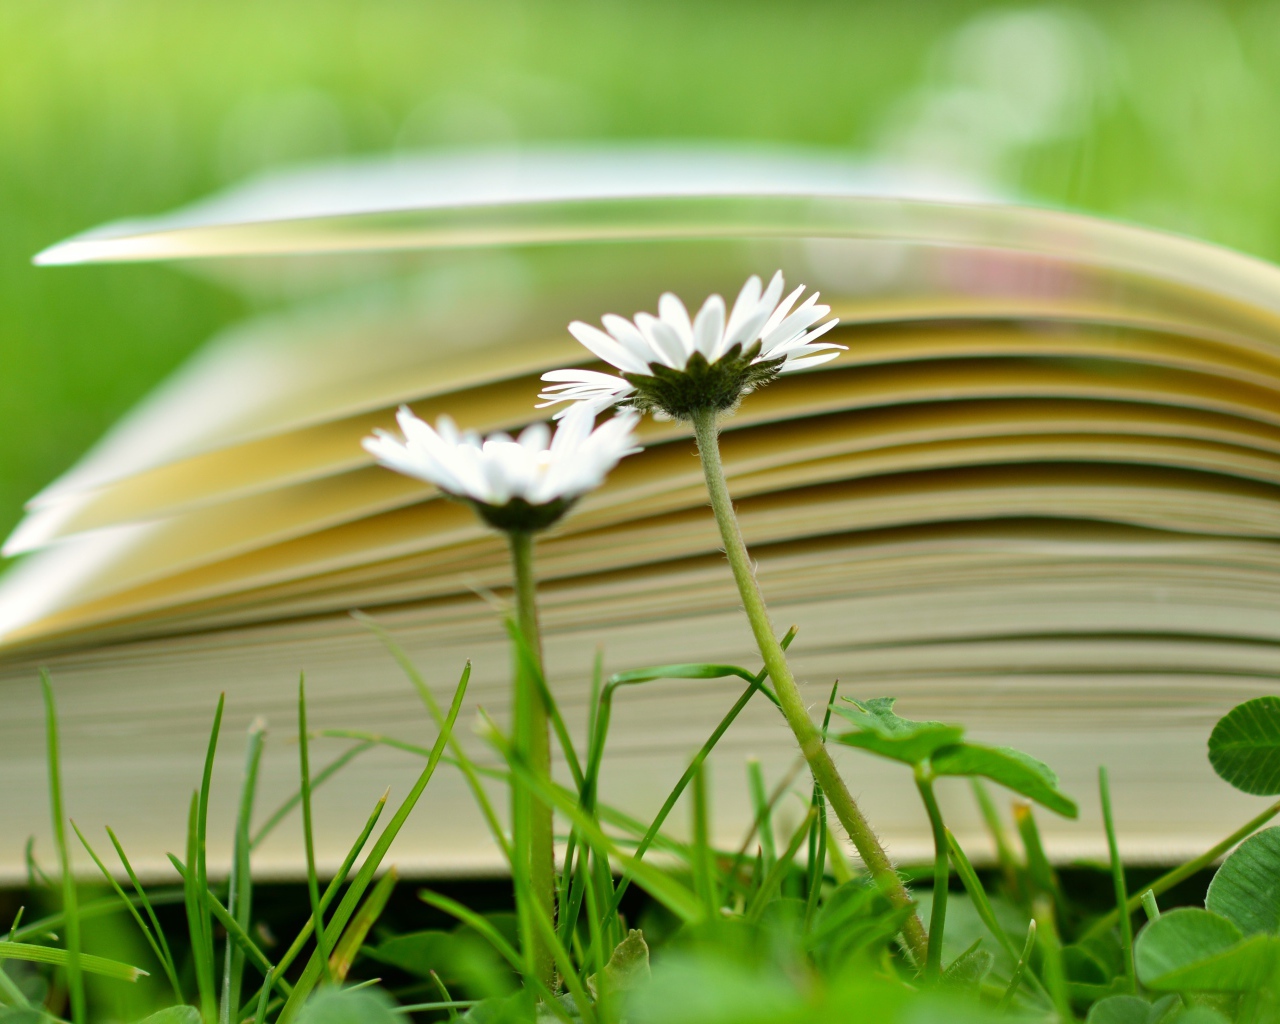 Открытая книга лежит на траве с белыми цветами